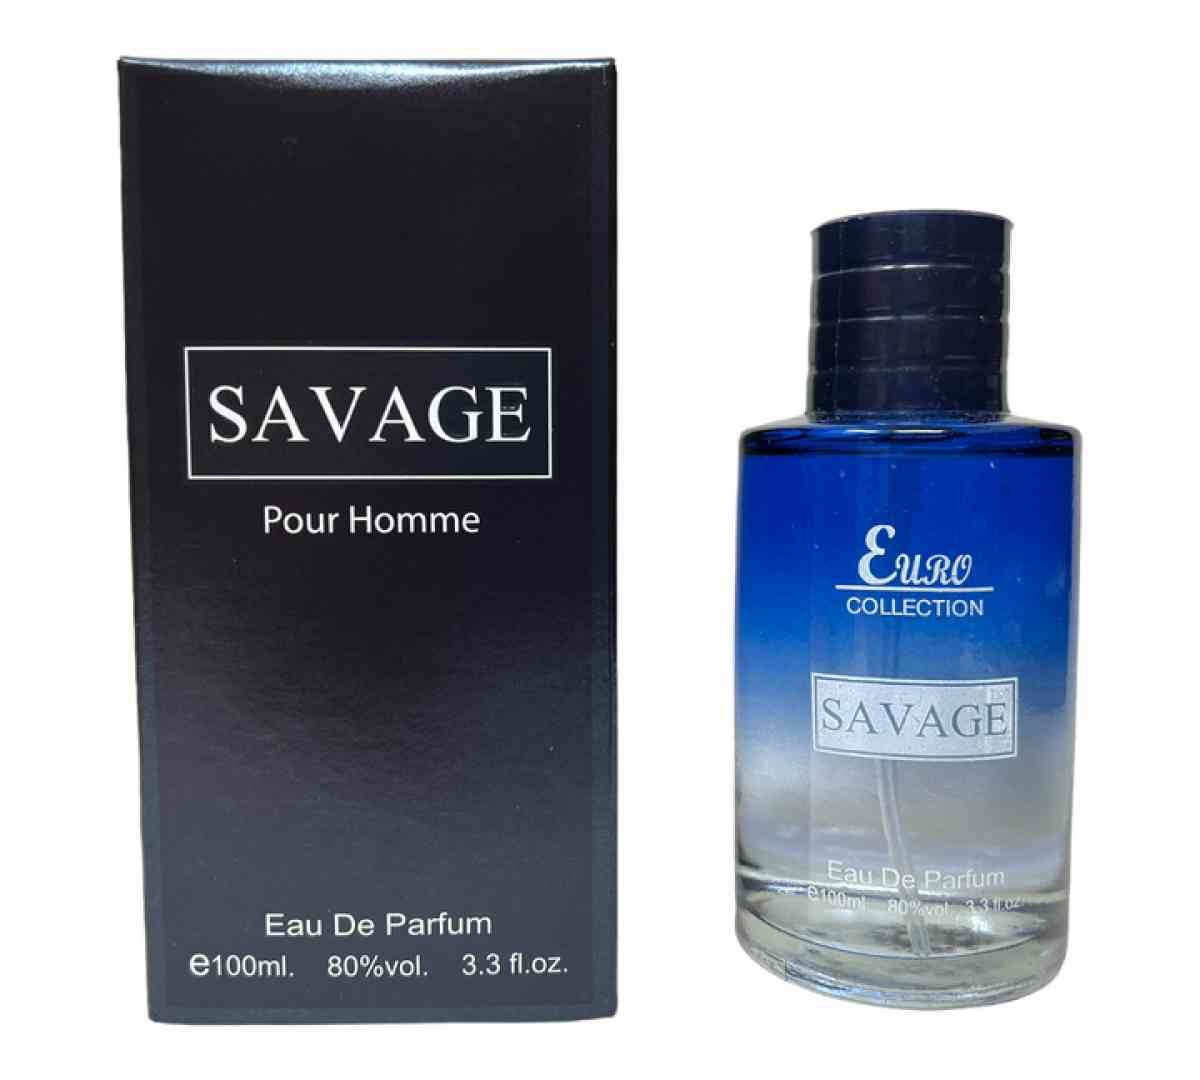 New (Sealed) Savage Pour Homme Eau De Perfum Spray 3.3 oz